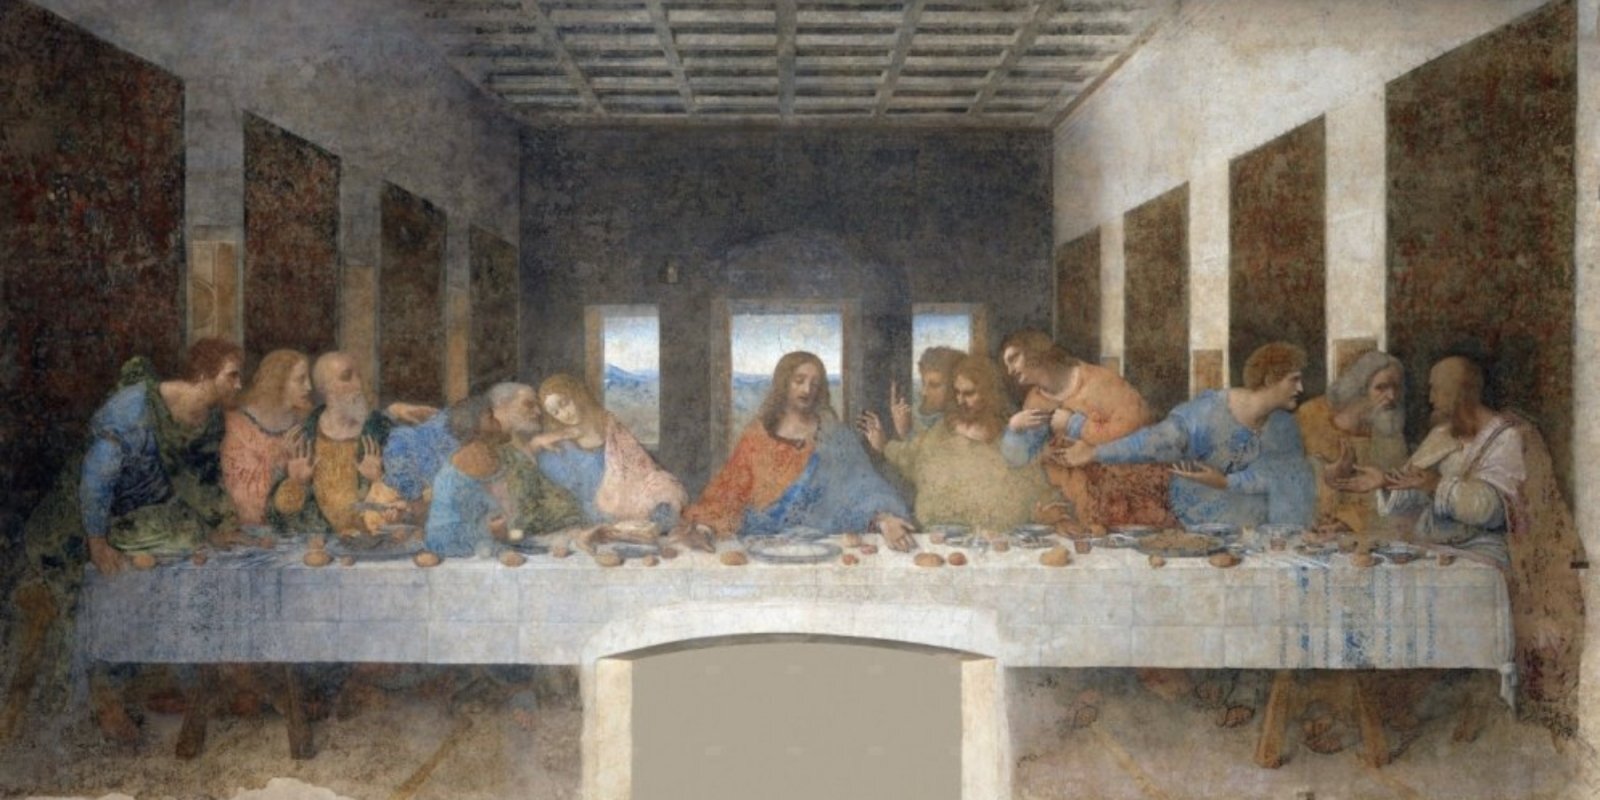 Kā noslēpumainais 'Svētais vakarēdiens' izglāba Leonardo da Vinči no nogrimšanas aizmirstībā